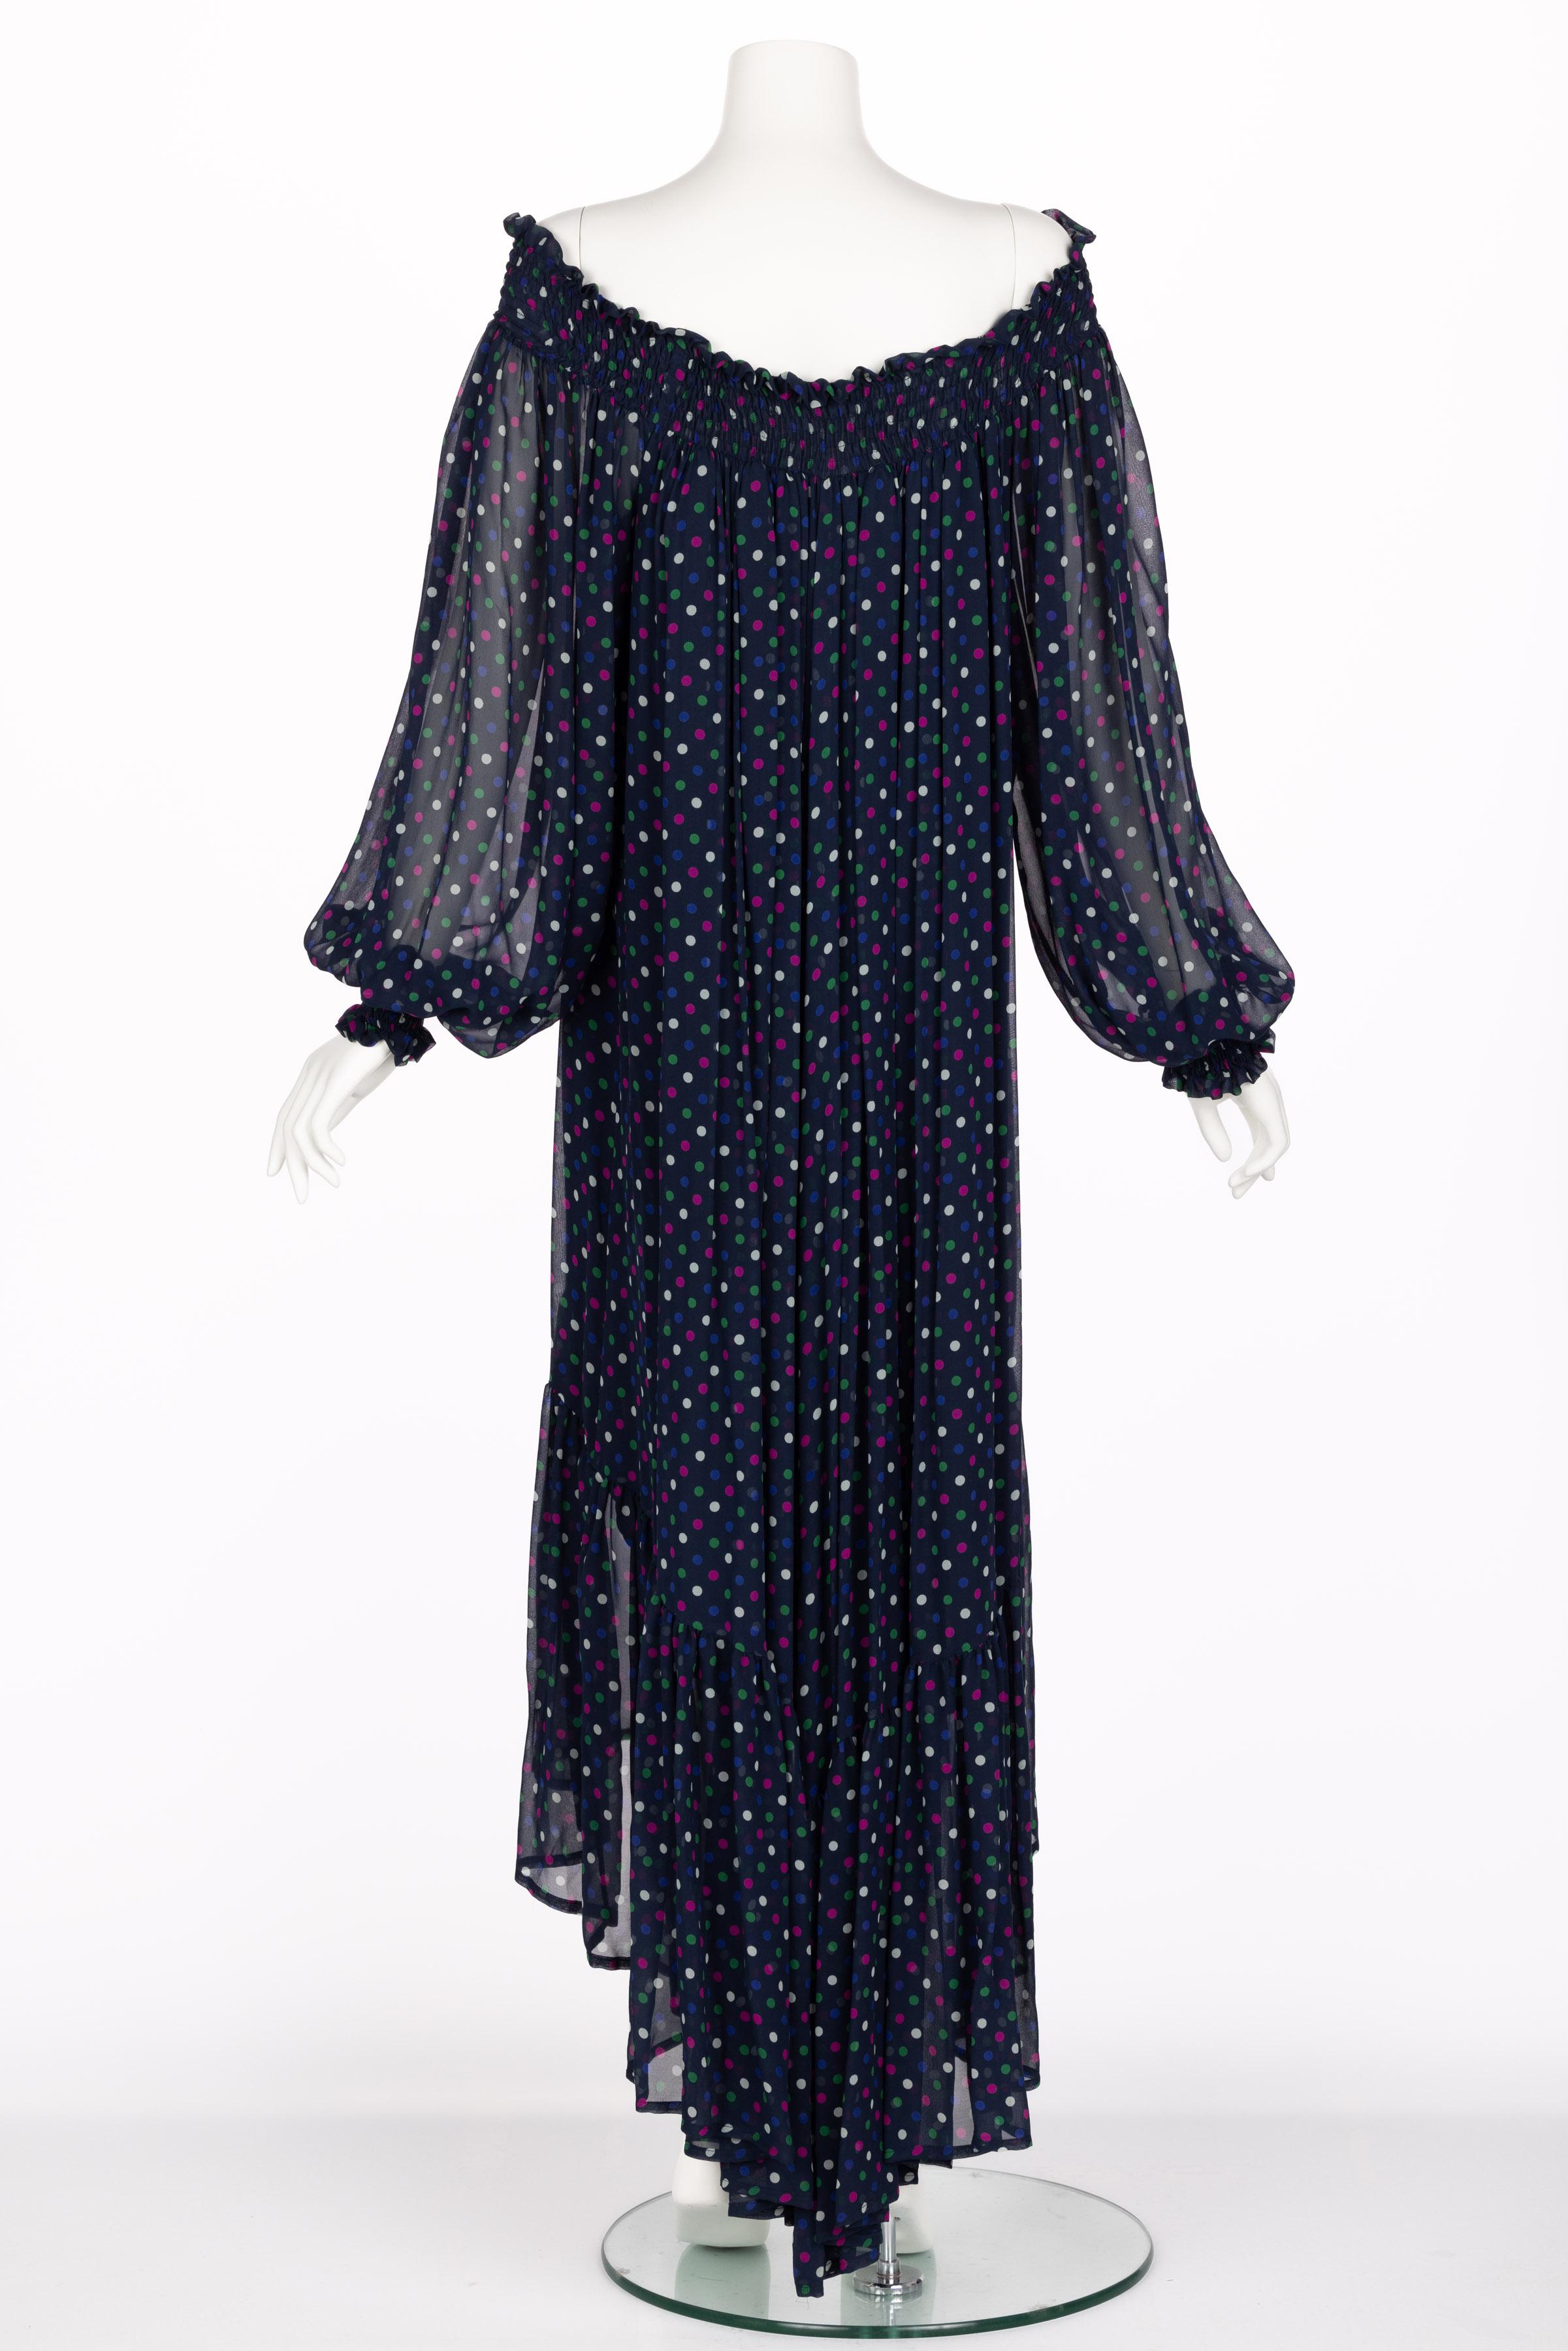 Saint Laurent Blue Polka Dot Off Shoulder Silk Dress YSL 1970s For Sale 7